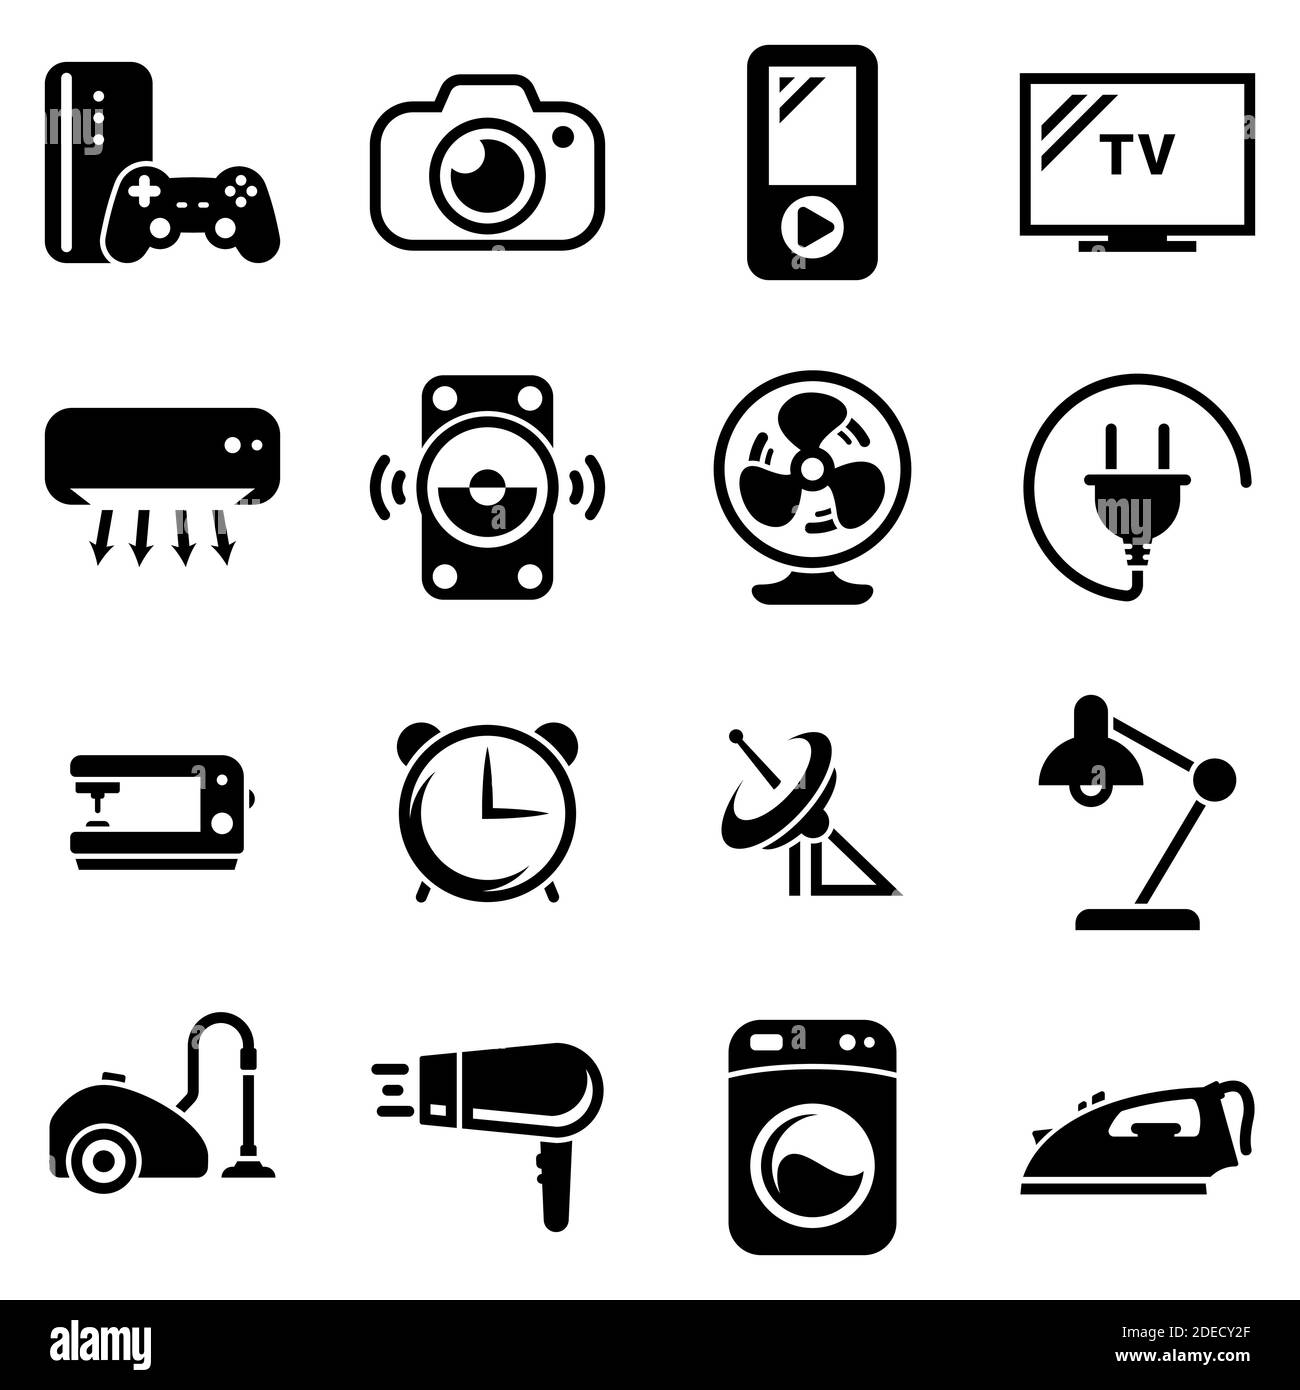 Satz von einfachen Symbolen auf einem Thema Haus, Haushaltsgeräte, Haushalt, Vektor, Design, Sammlung, Wohnung, Zeichen, Symbol, Element, Objekt, Illustration. Schwarz i Stock Vektor